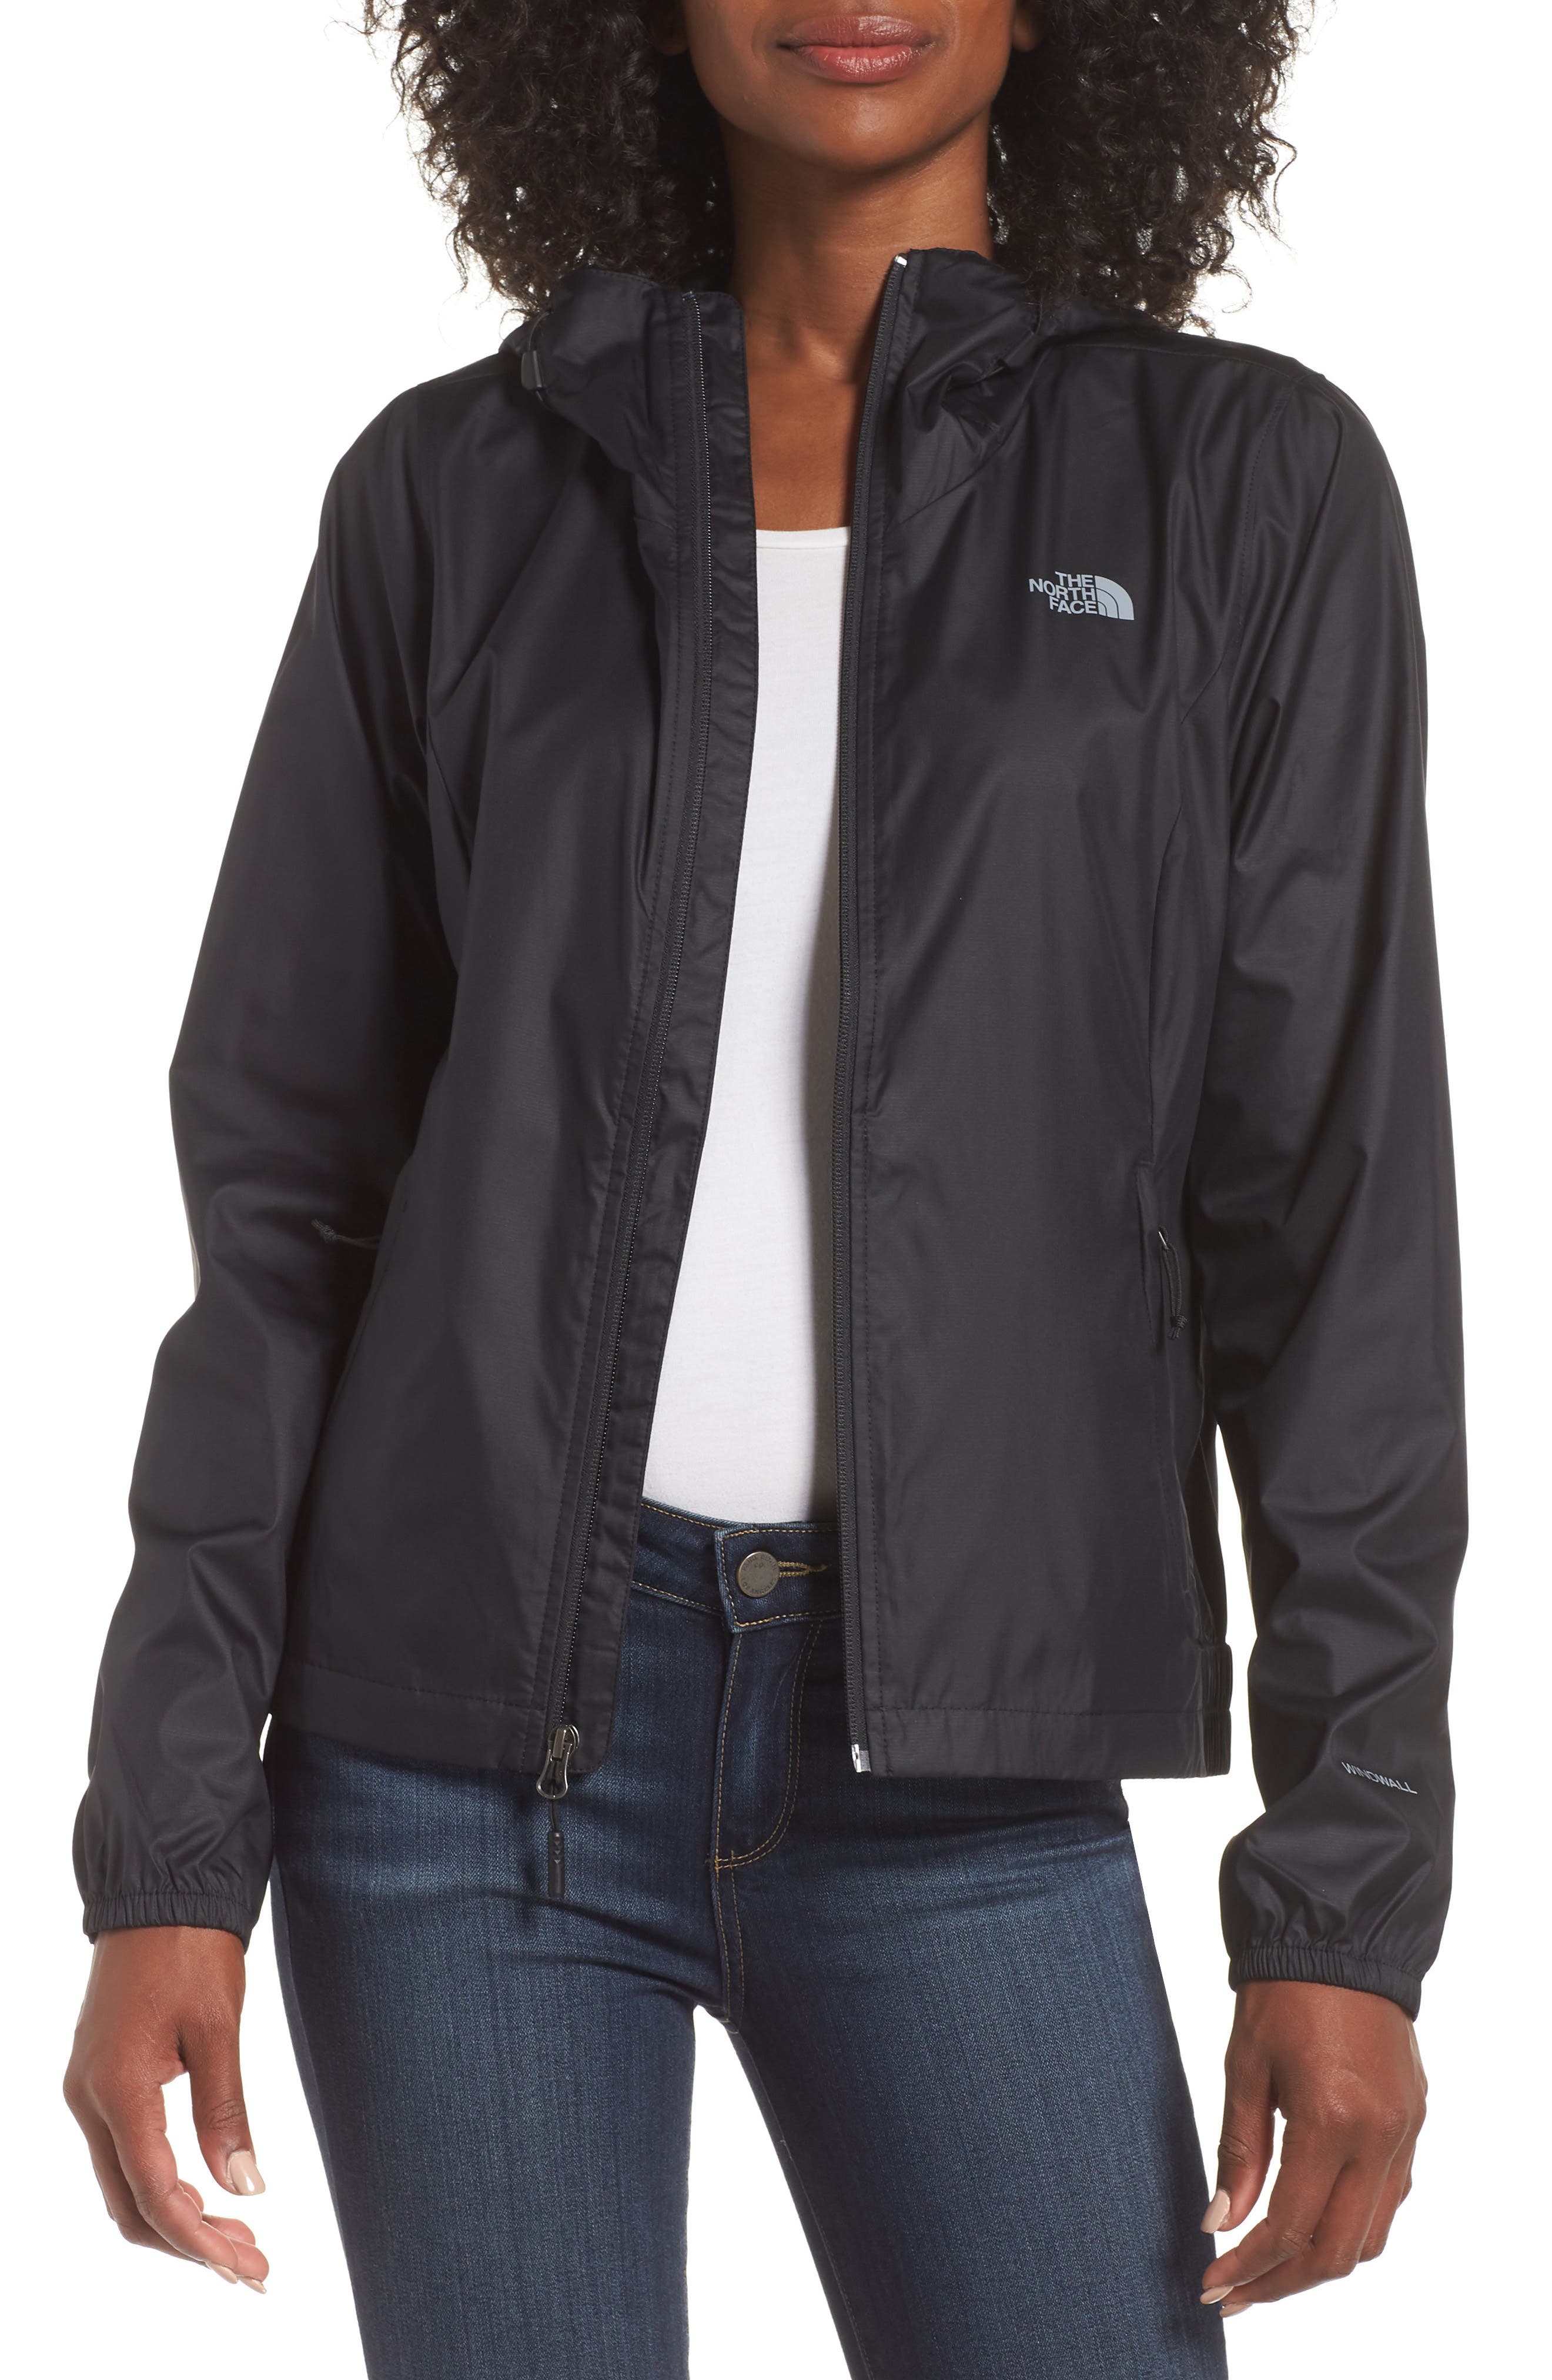 north face windwall jacket women's sale